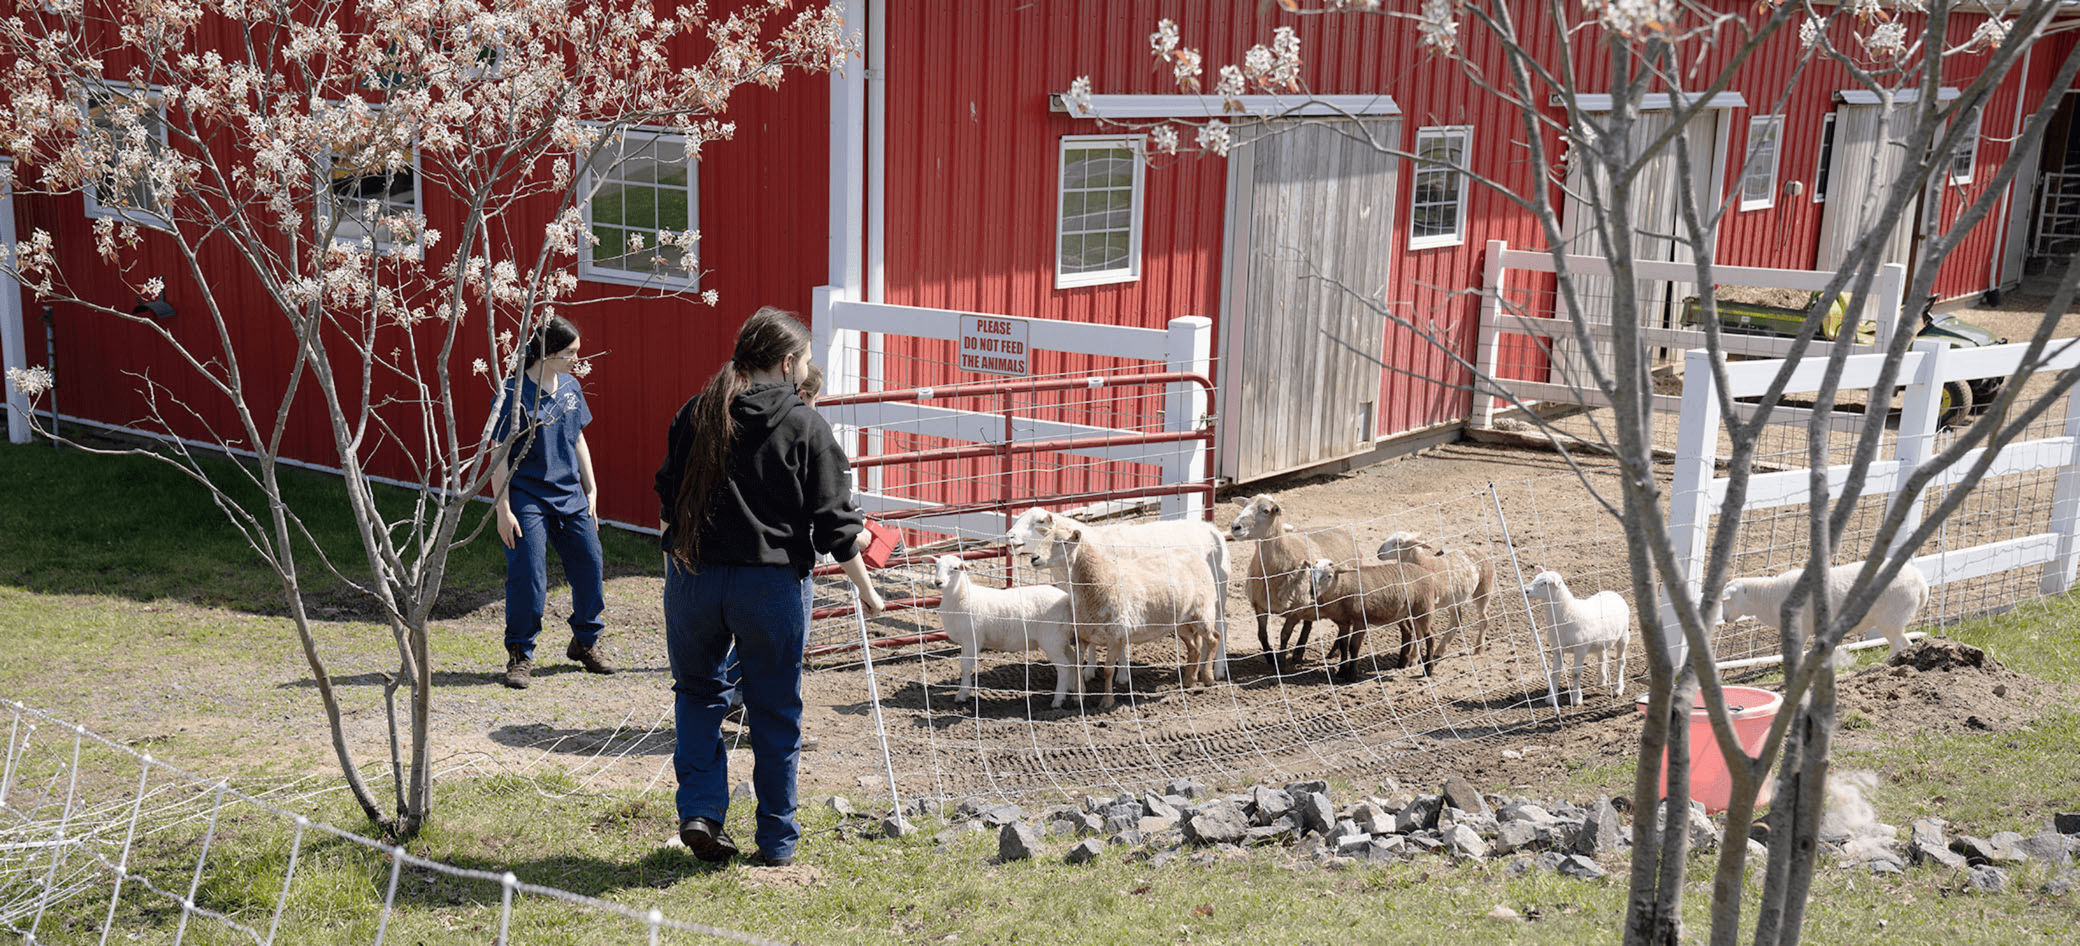 Três alunos soltam um grupo de ovelhas excitadas de um curral.